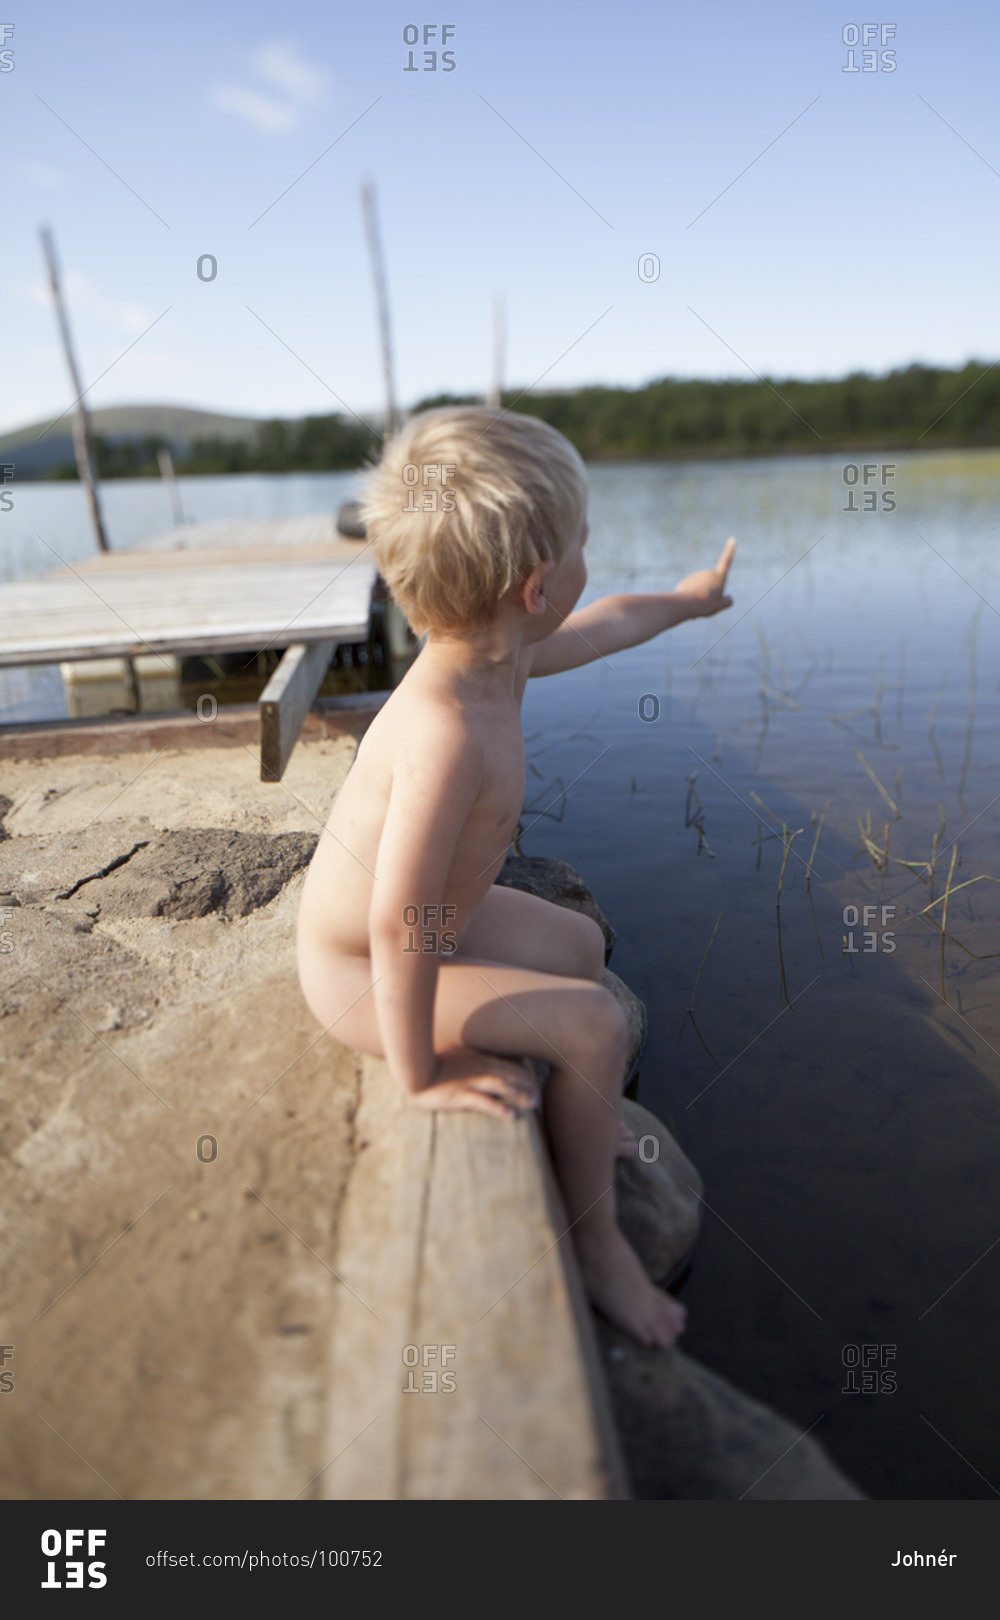 Naked boy sitting at lake